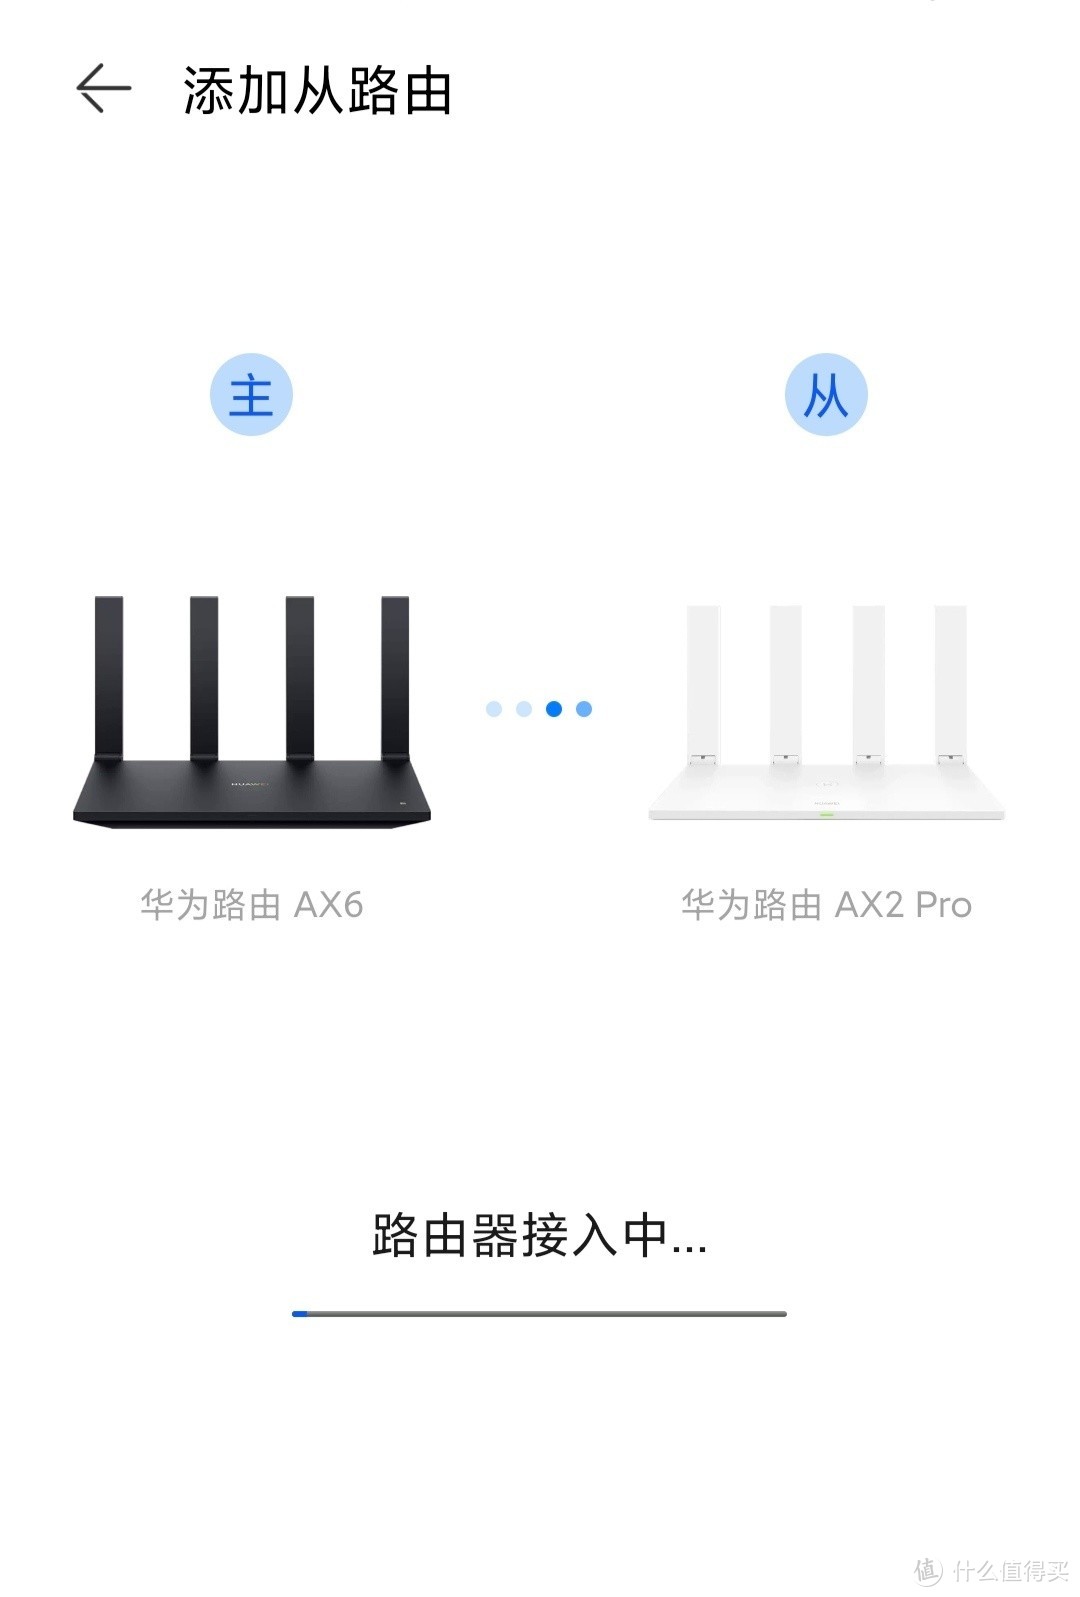 插电以后智慧生活app直接提示AX2 pro是做新路由器还是做从路由选择以后自动连接